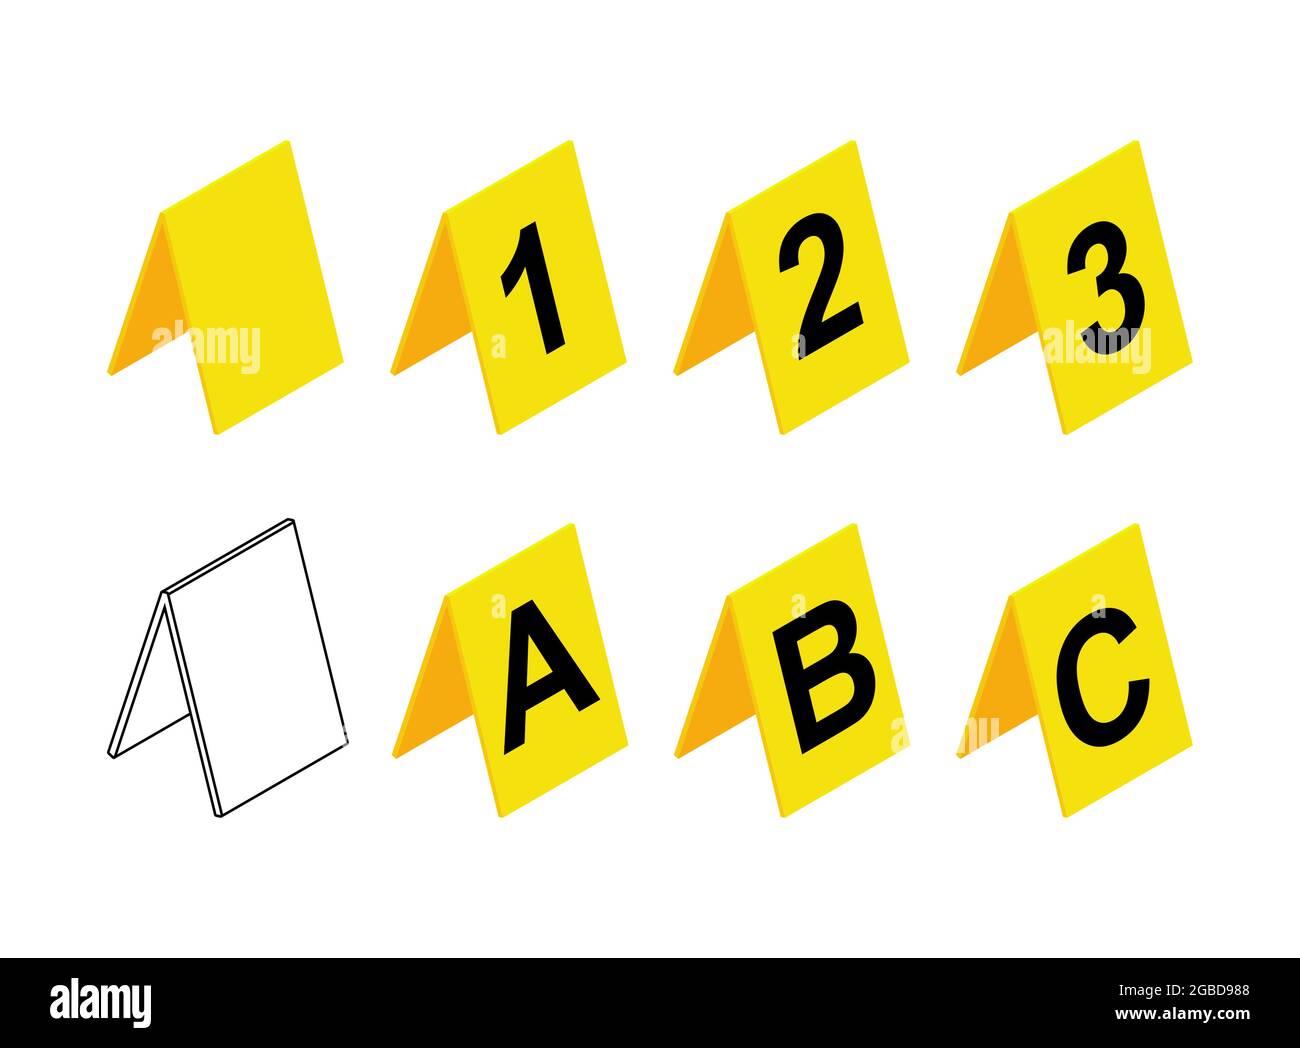 Design dei marcatori di scena del crimine. Set di icone di etichetta investigativa gialla in plastica con lettere A, B, C e numero 1,2,3. Contiene anche un simbolo vuoto o vuoto. Ve Illustrazione Vettoriale